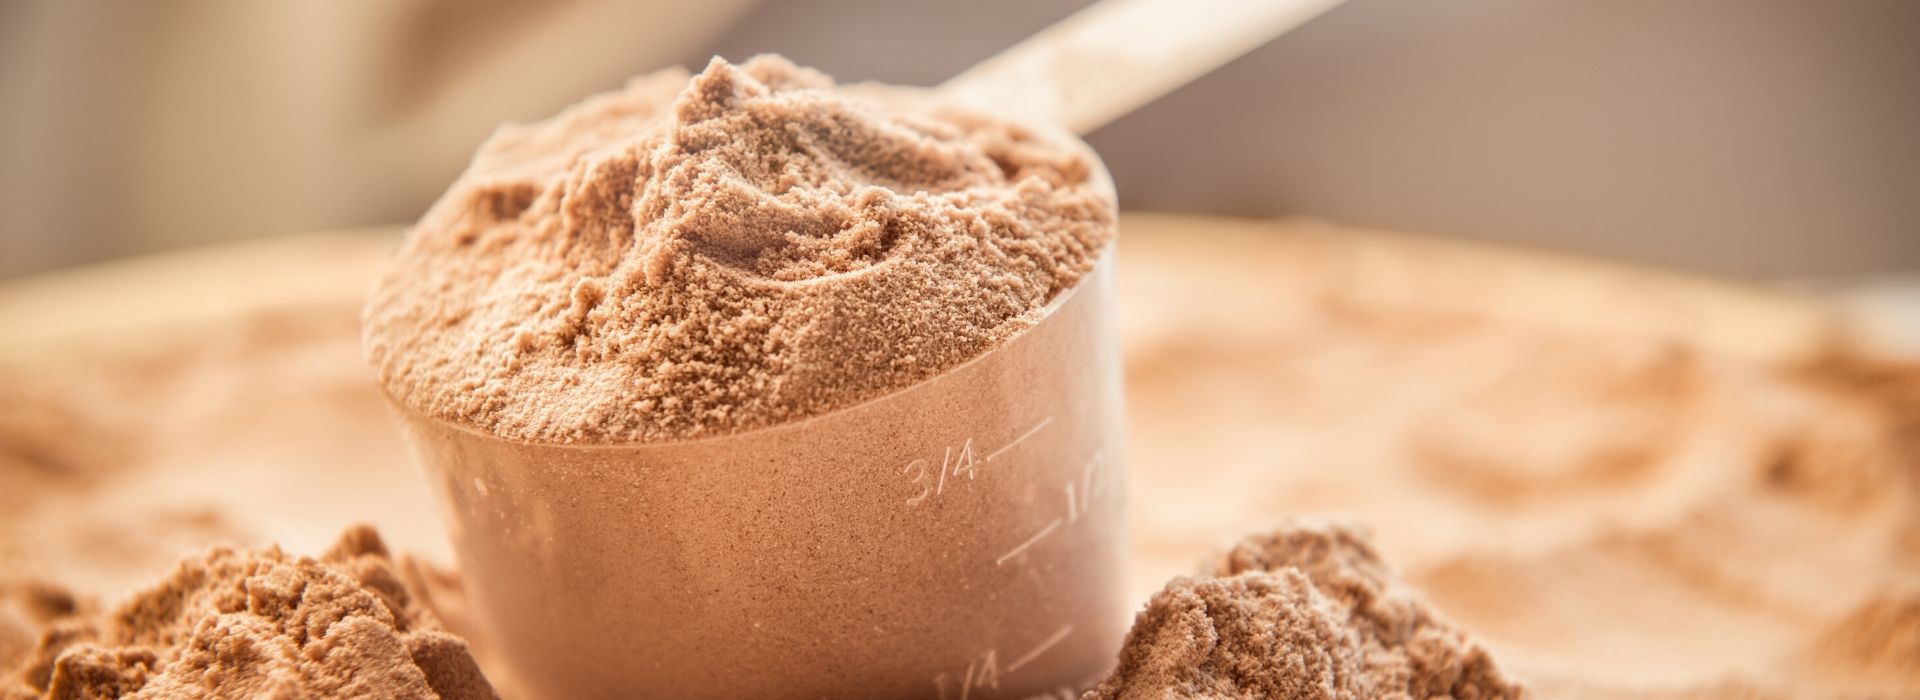 10 risposte sulle proteine in polvere